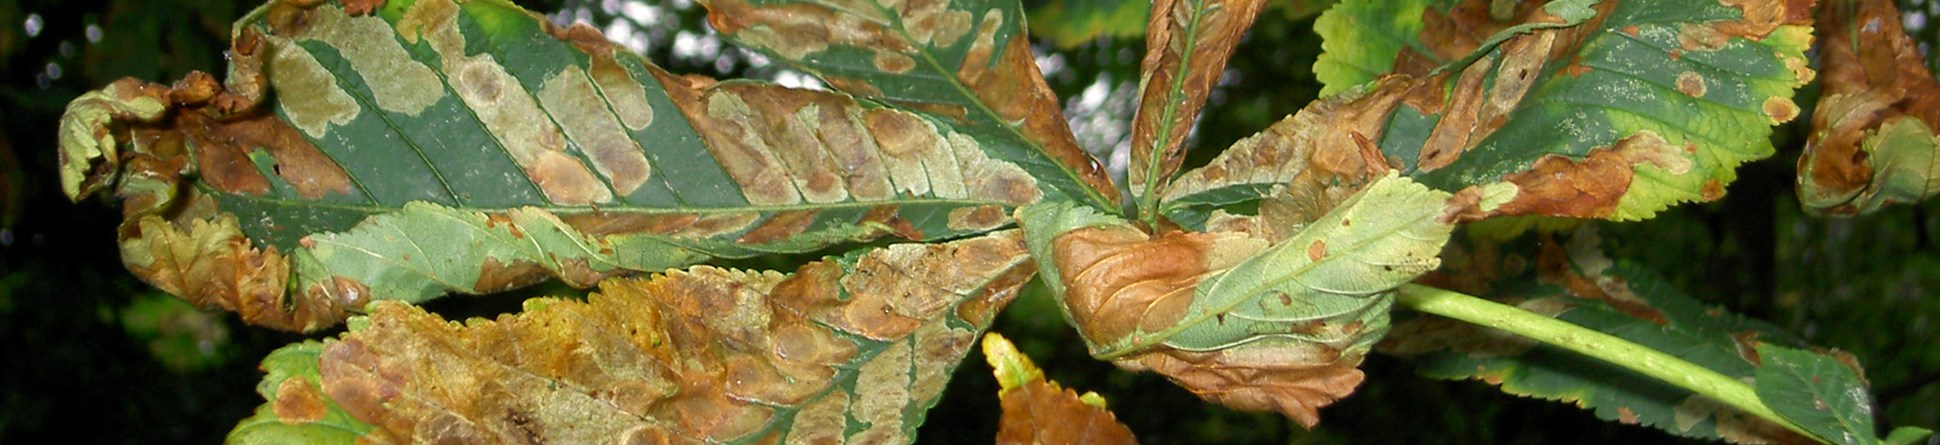 Horse Chestnut leaves affected by horse chestnut leaf miner